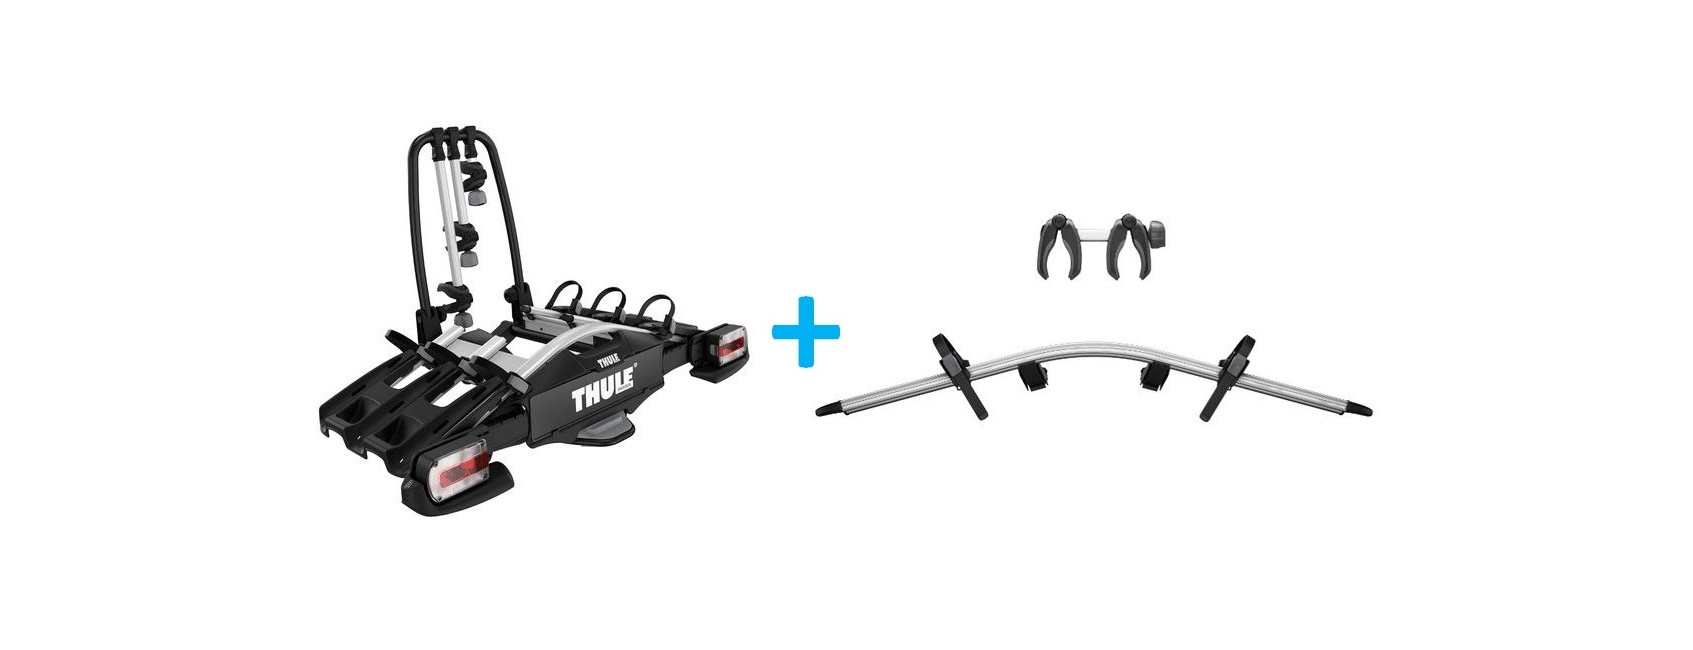 Thule - VeloCompact 927  Cykelholder 2018 7-Pins  + 4th Bike Adapter Bundle